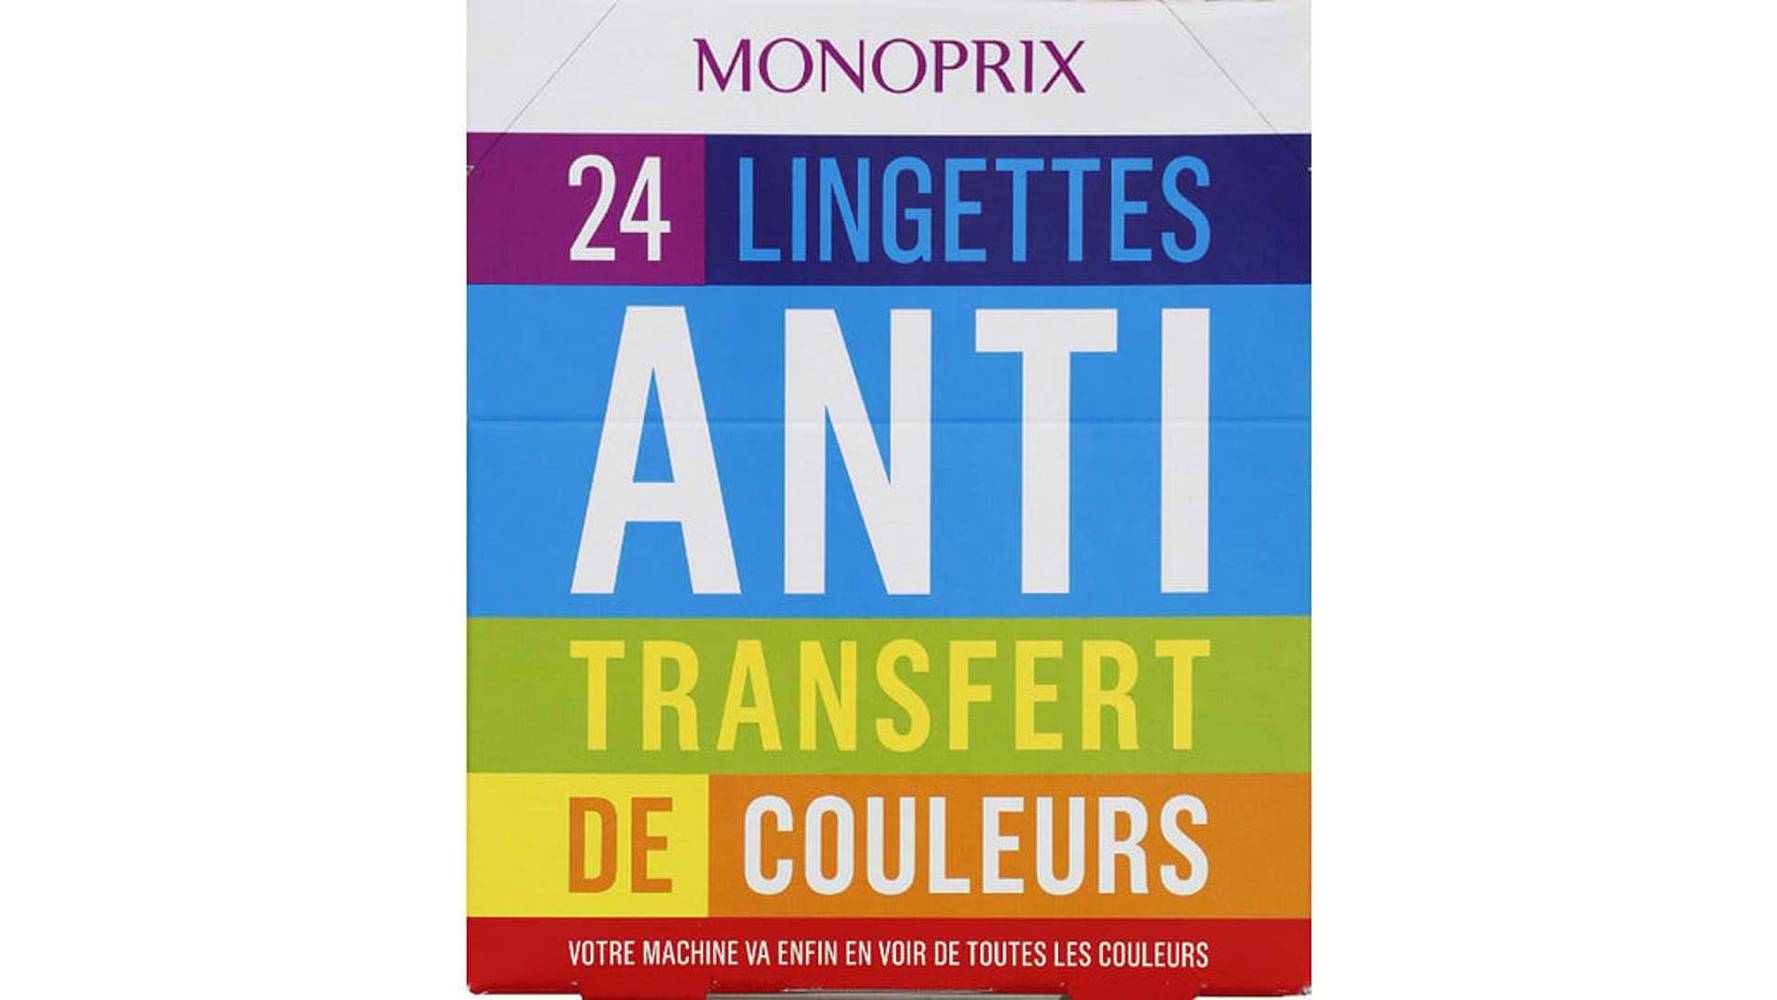 Monoprix Lingettes anti transfert de couleur Les 24 lingettes